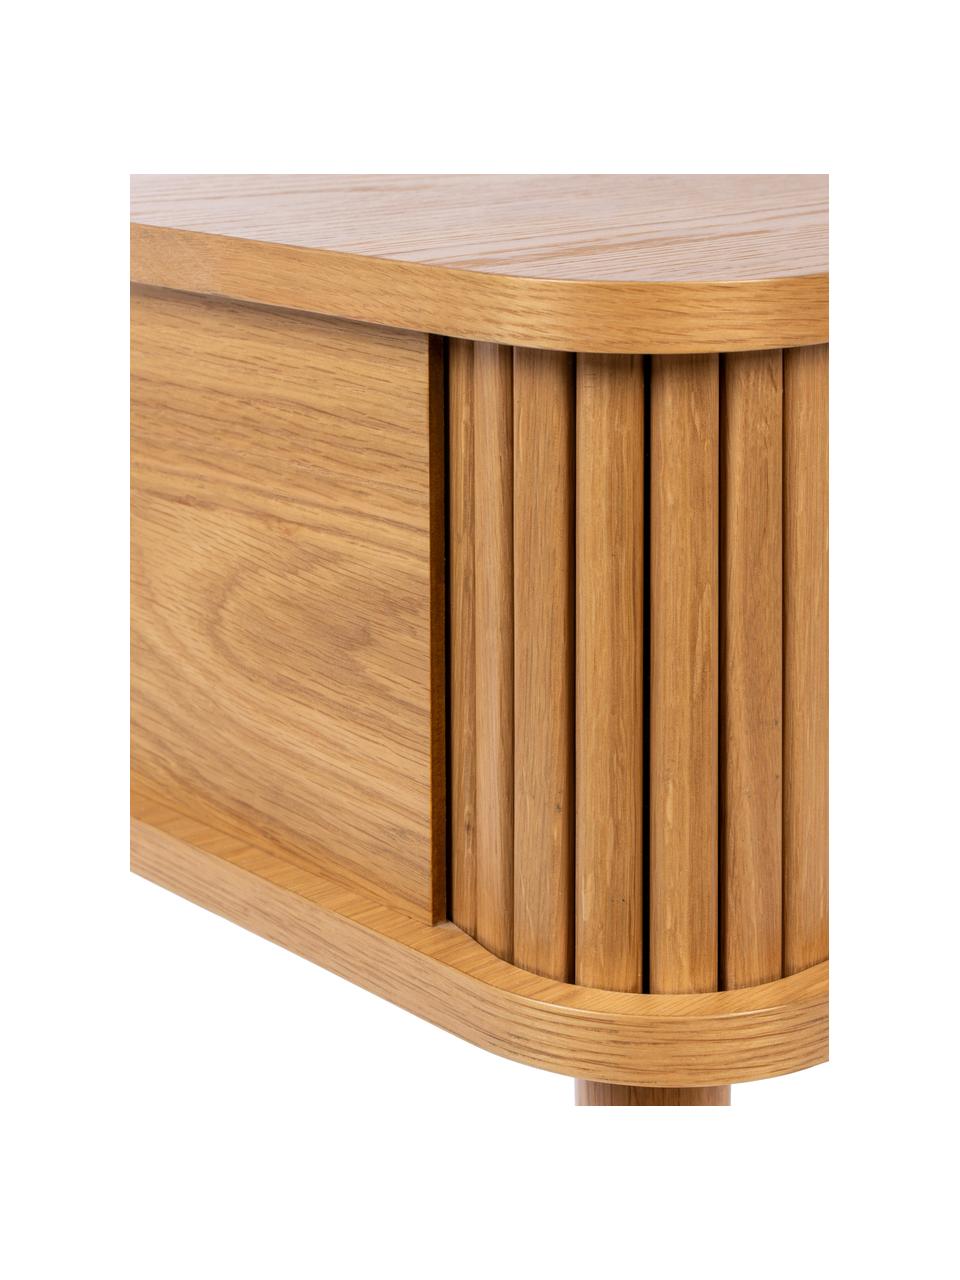 Dřevěný noční stolek s posuvnými dvířky Barbier, Světlé dubové dřevo, Š 45 cm, V 59 cm